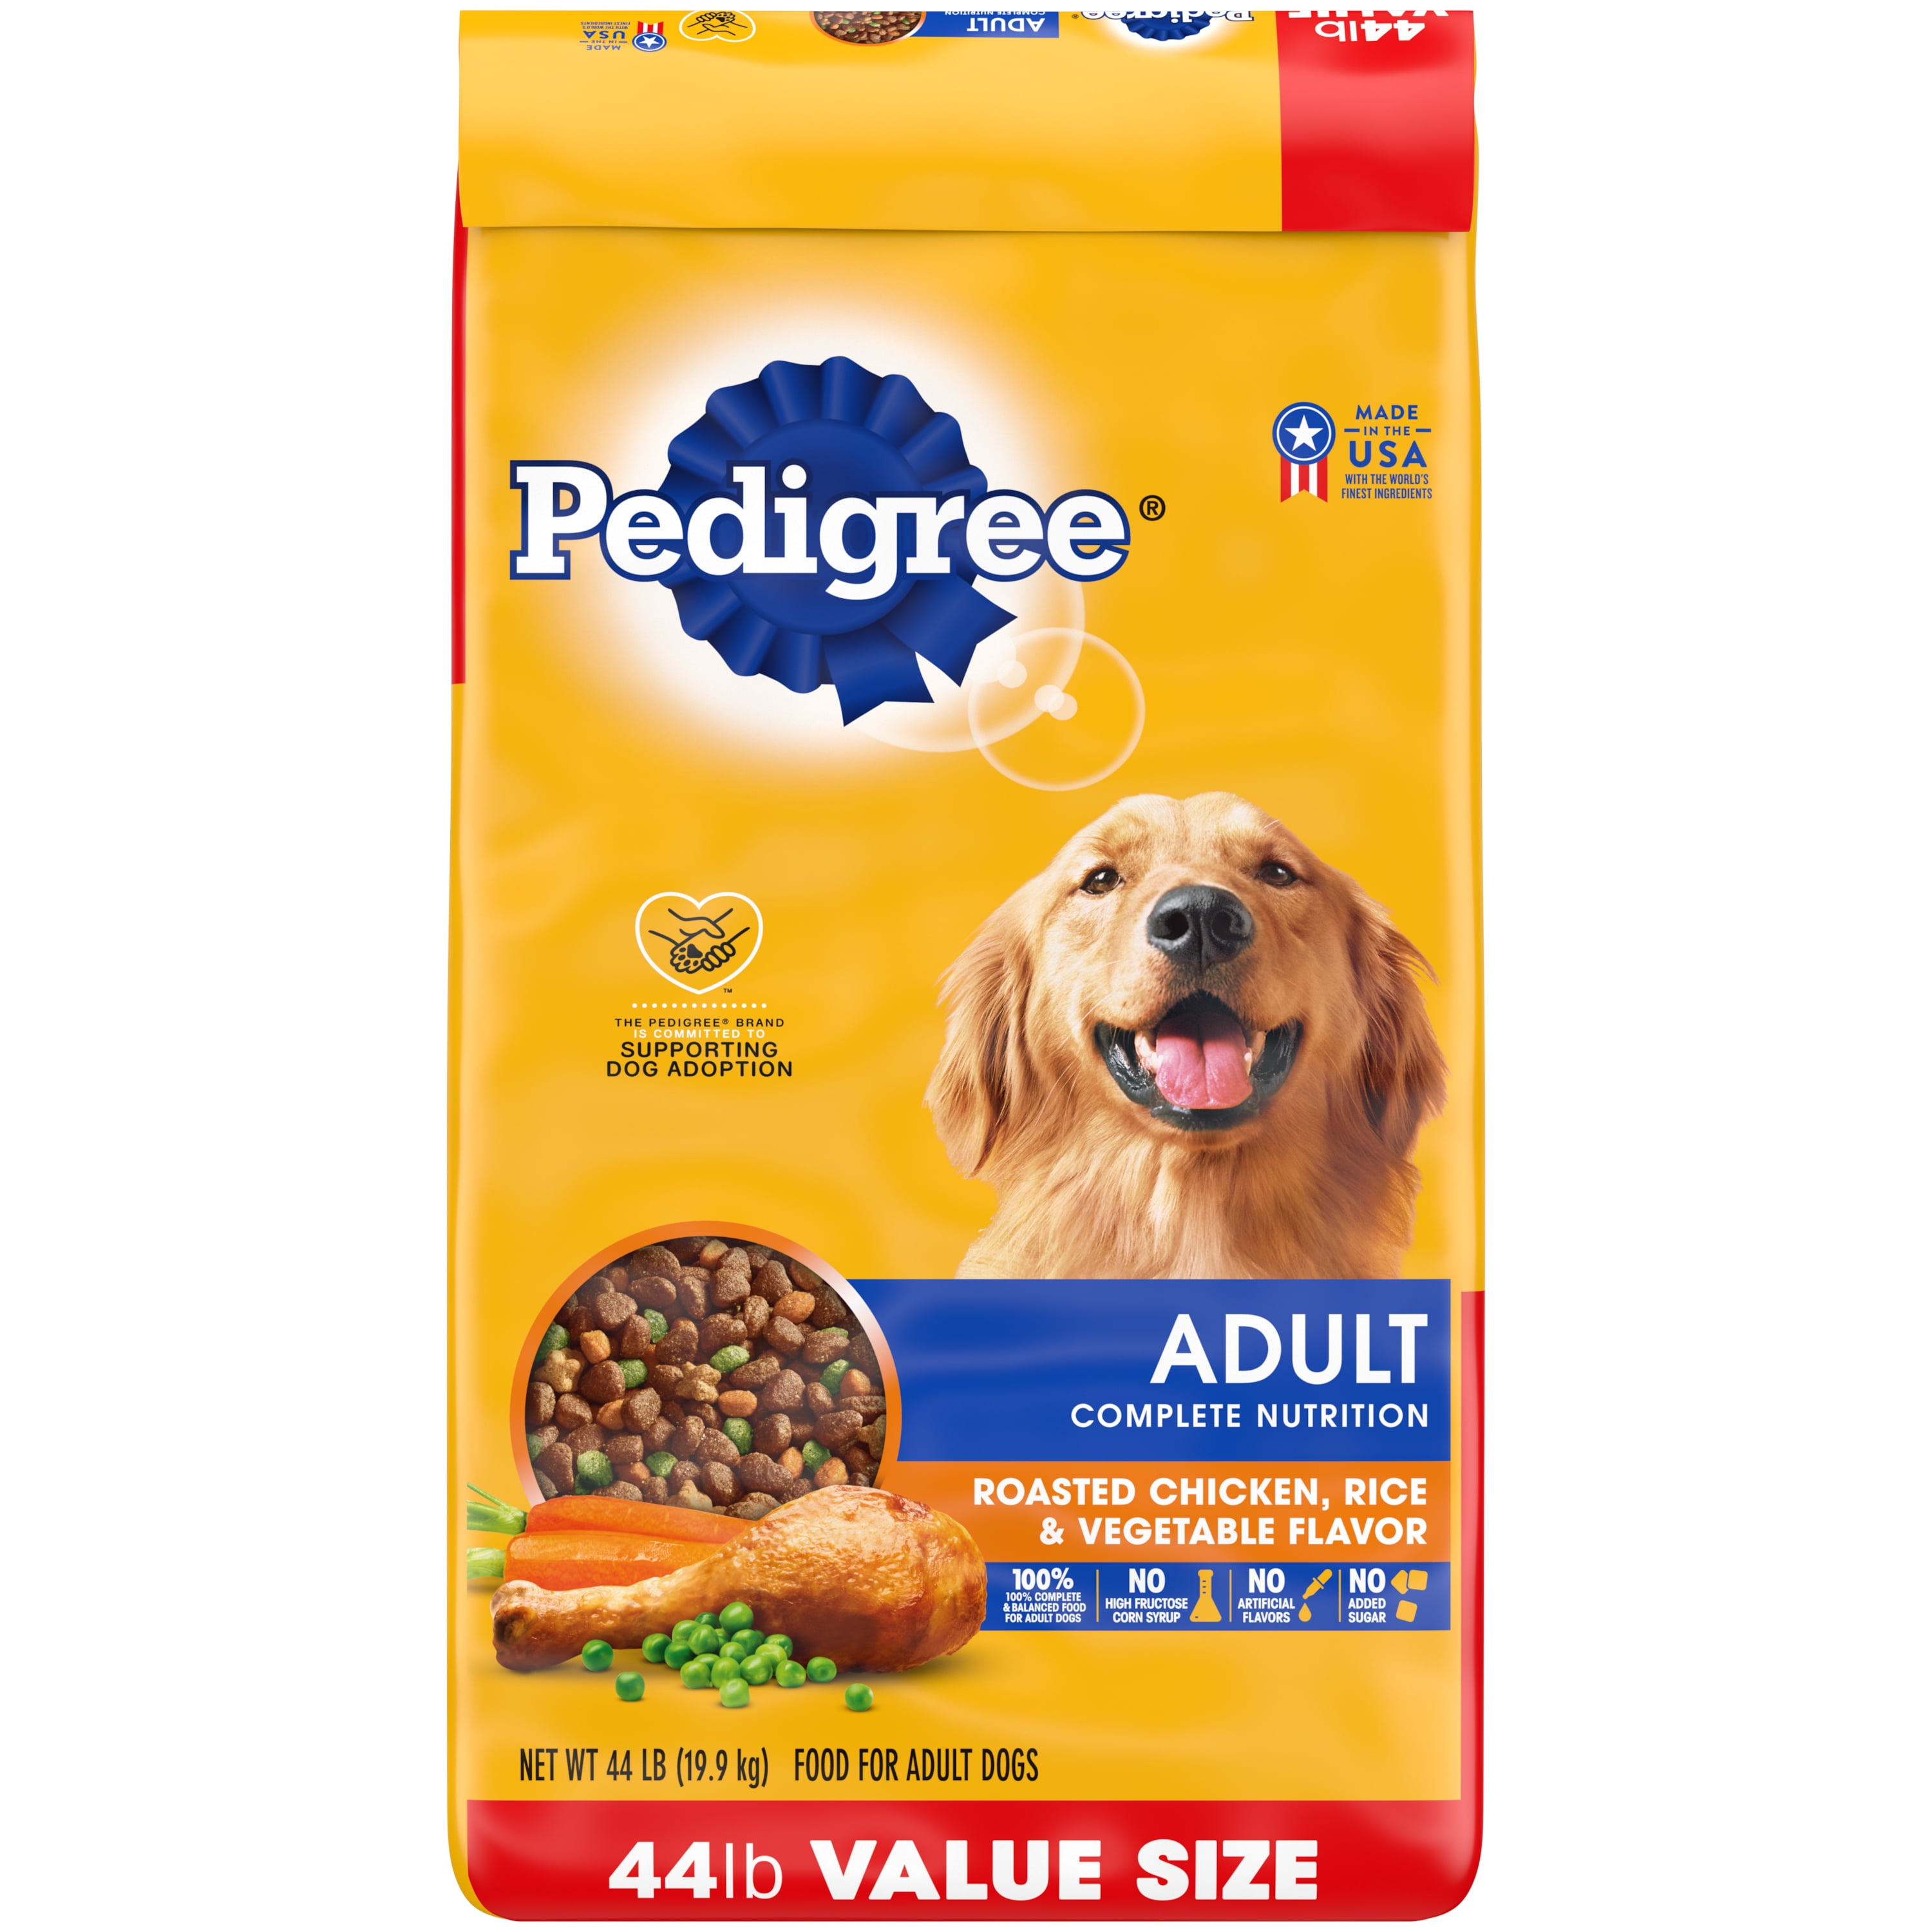 Pedigree Complete Nutrition Roasted Chicken, Rice & Vegetable Dry Dog Food for Adult Dog, 44 lb. Bag